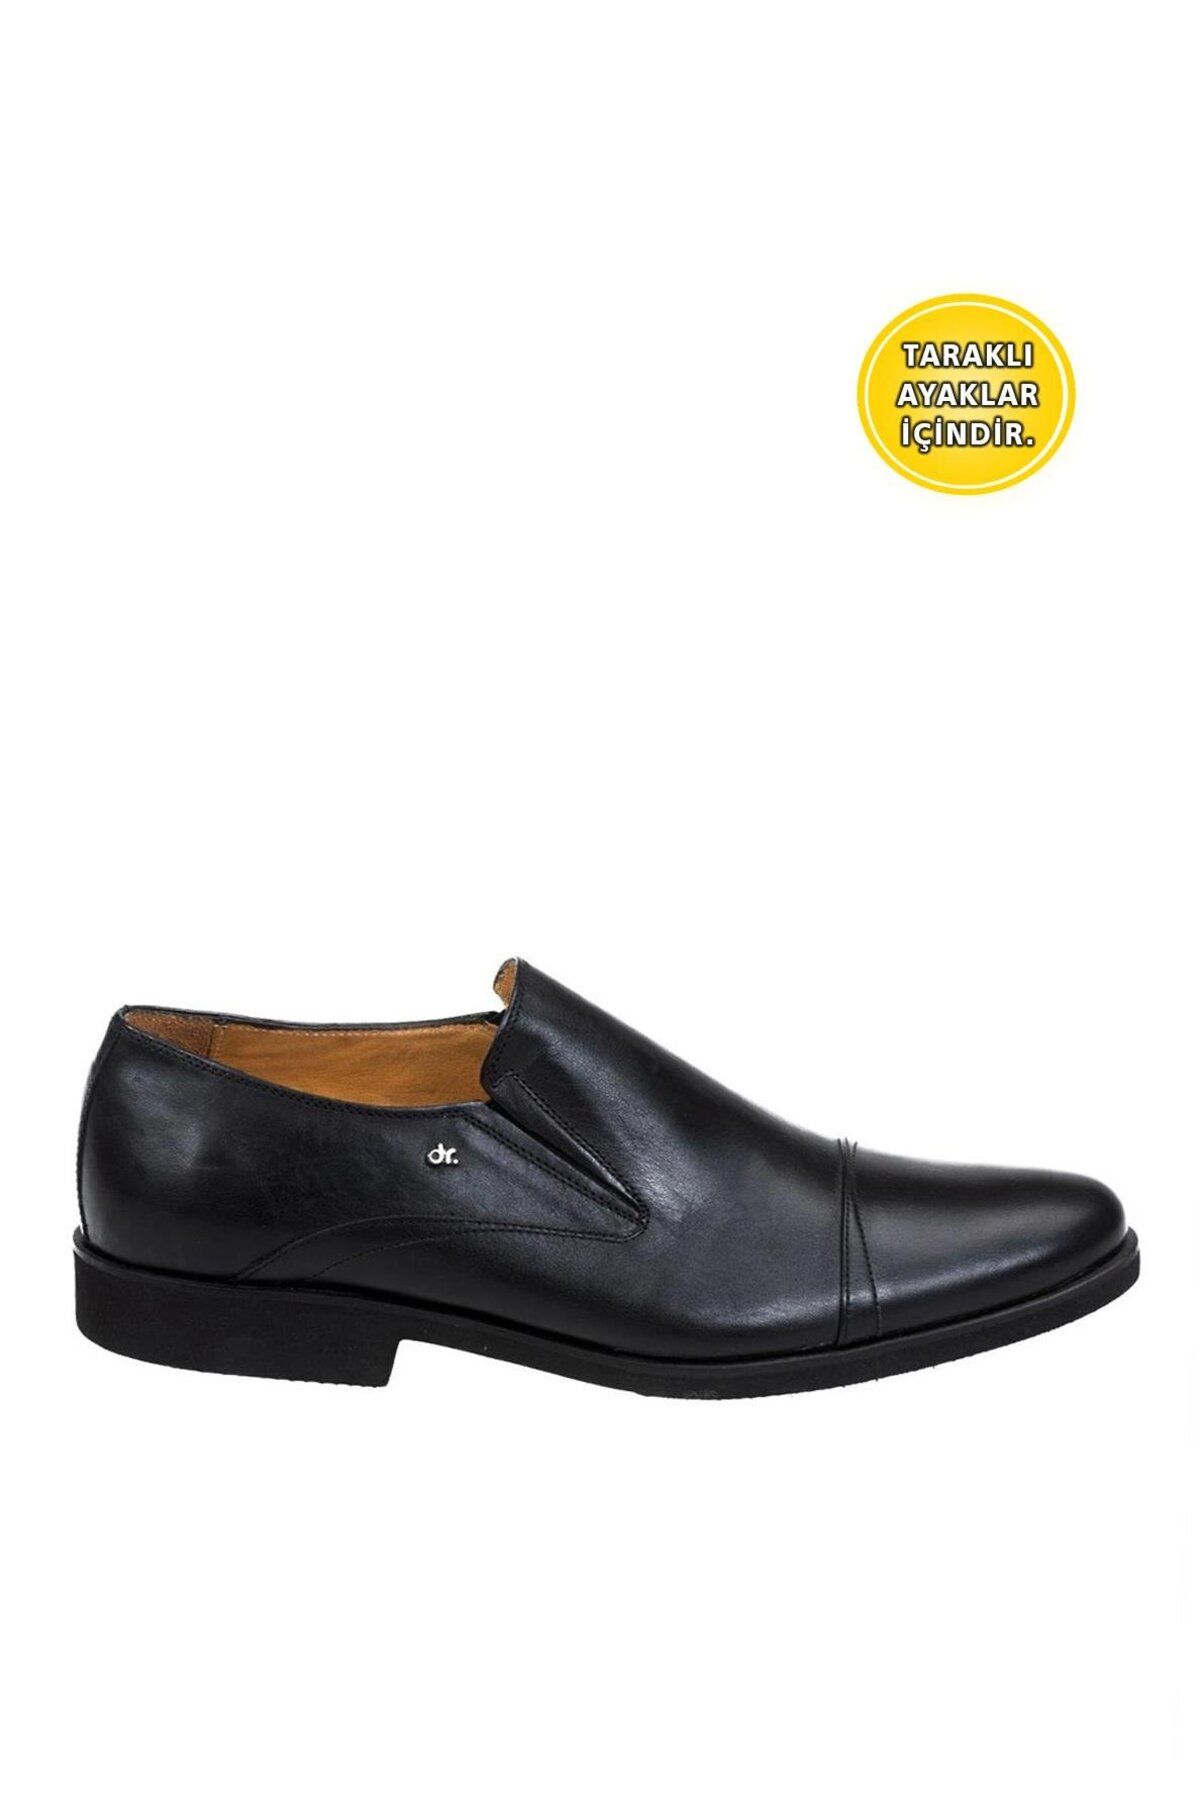 Dr.Flexer 21403 Hakiki Deri Erkek Comfort Büyük Numaralı Ayakkabı Siyah